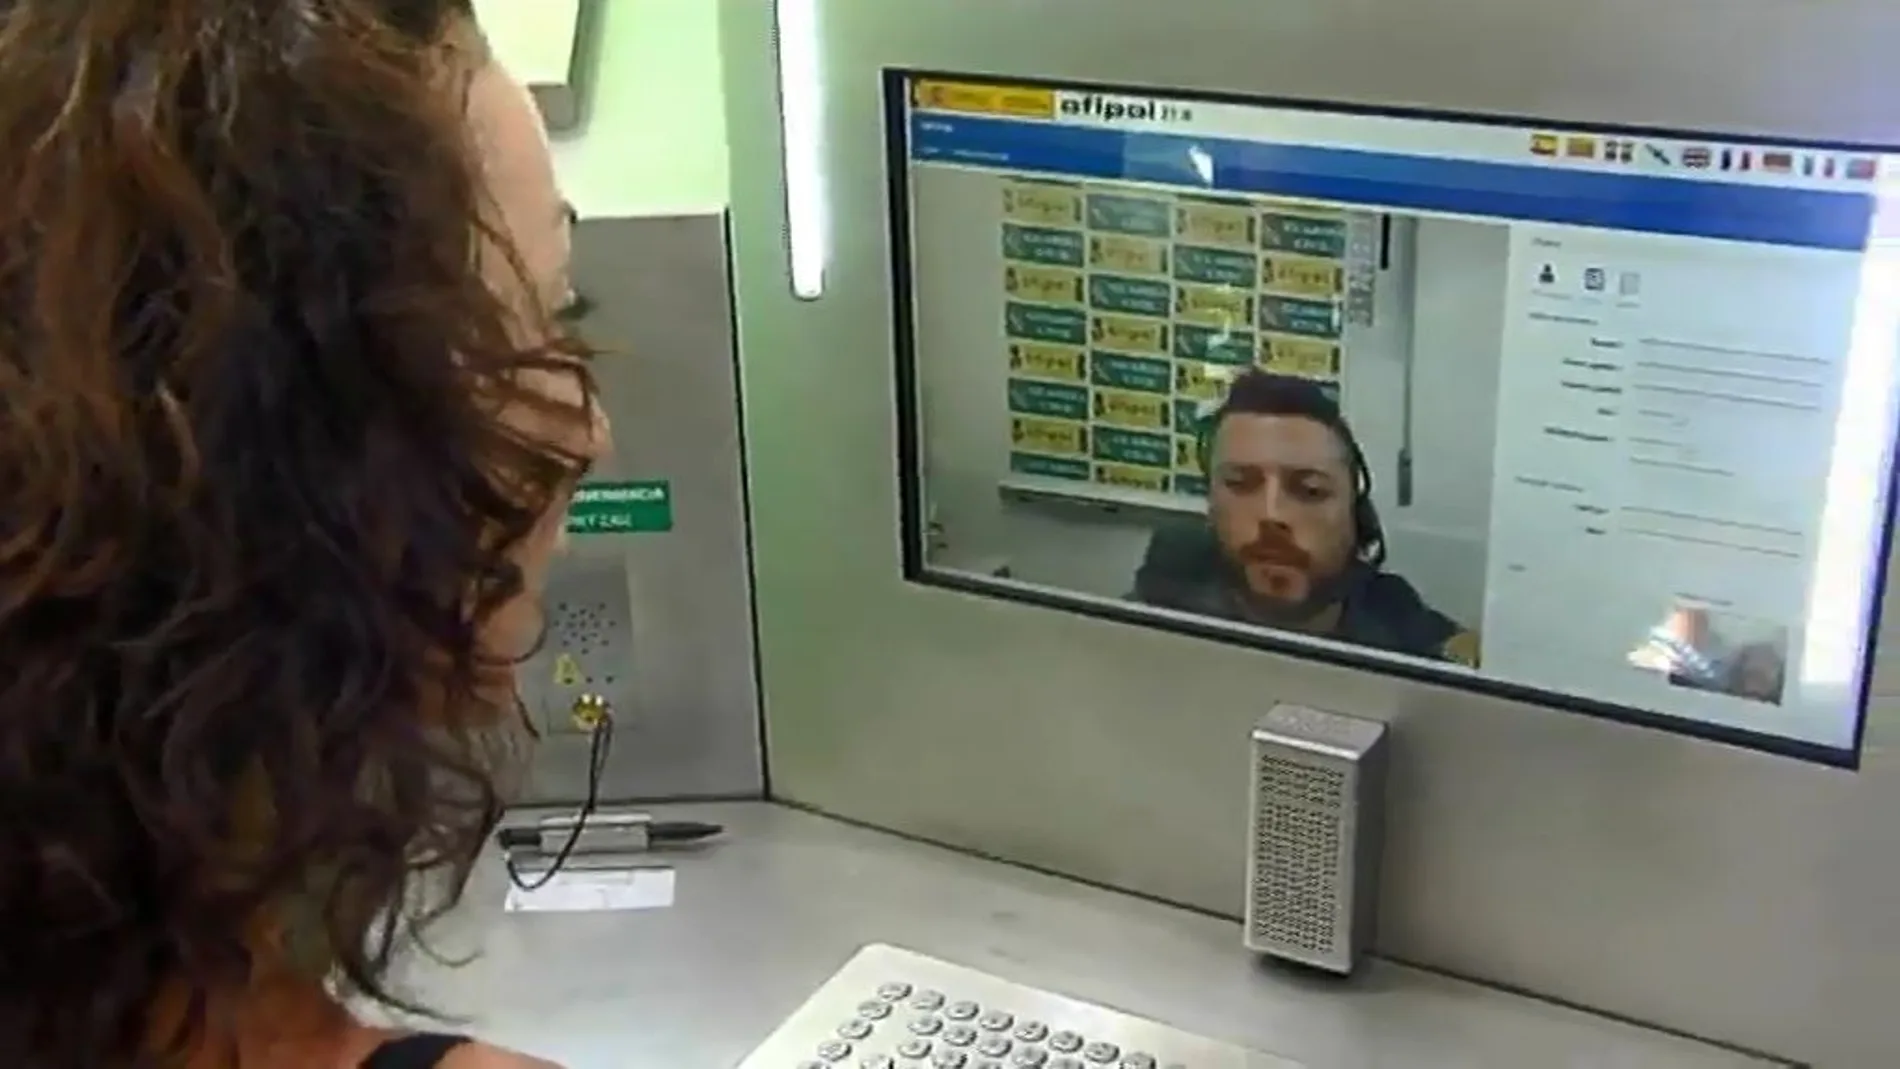 La cabina conocida como Ofipol permite hacer denuncias por videoconferencia